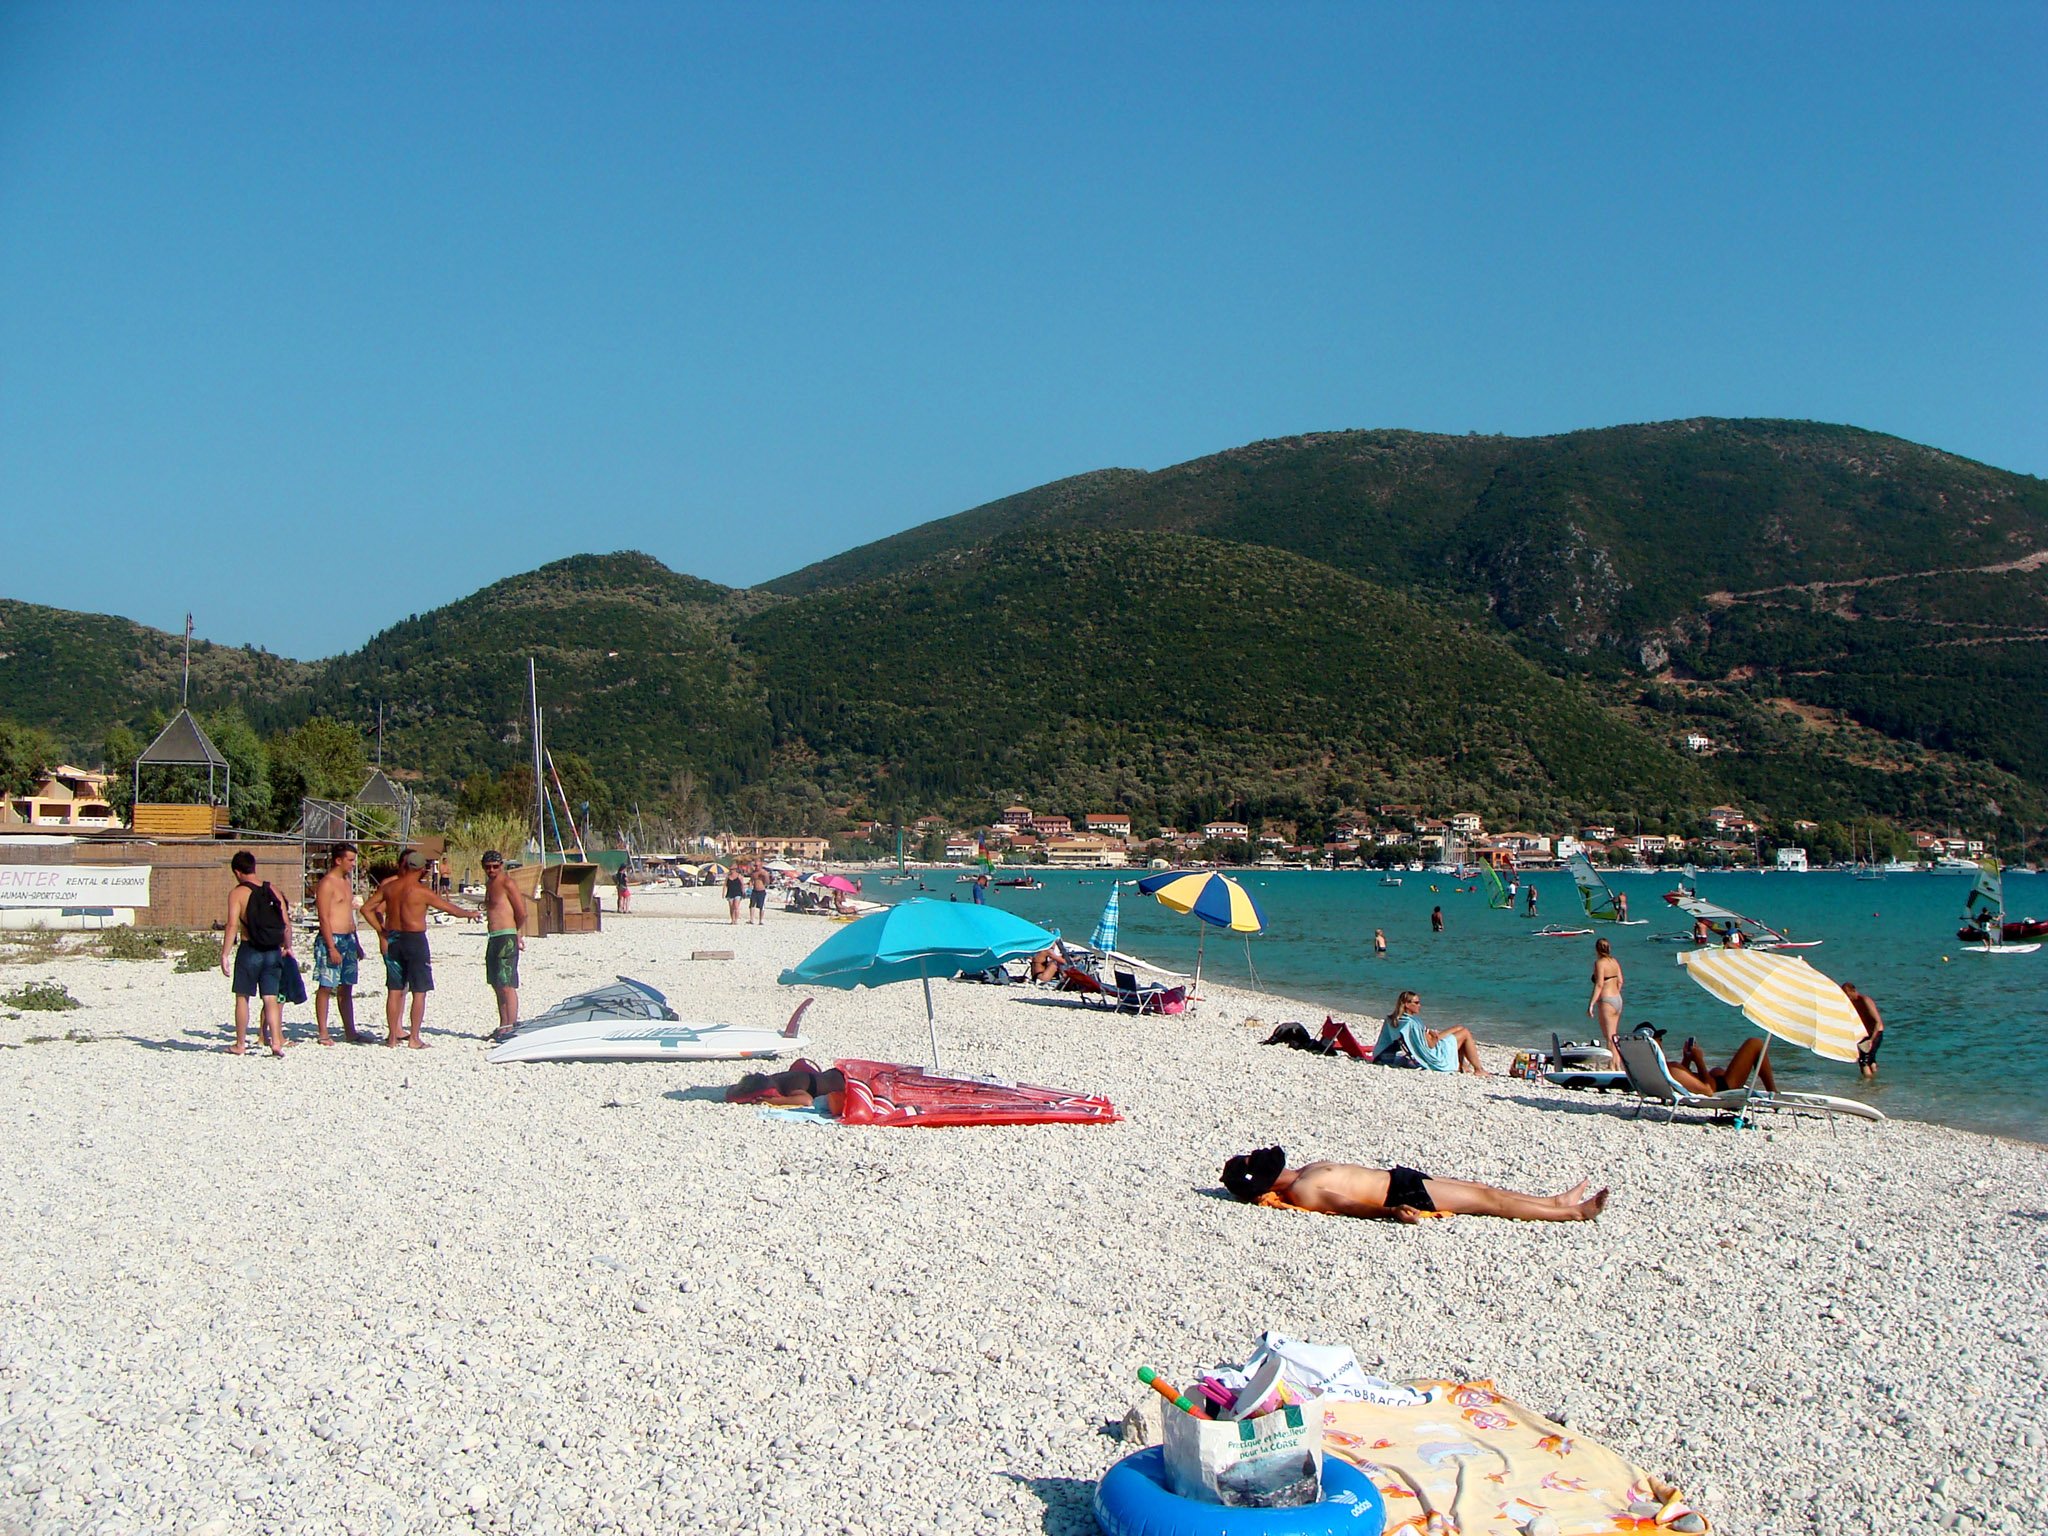 Βασιλική παραλία - Λευκάδα (Vasiliki beach - Lefkada) Photo from Ponti ...